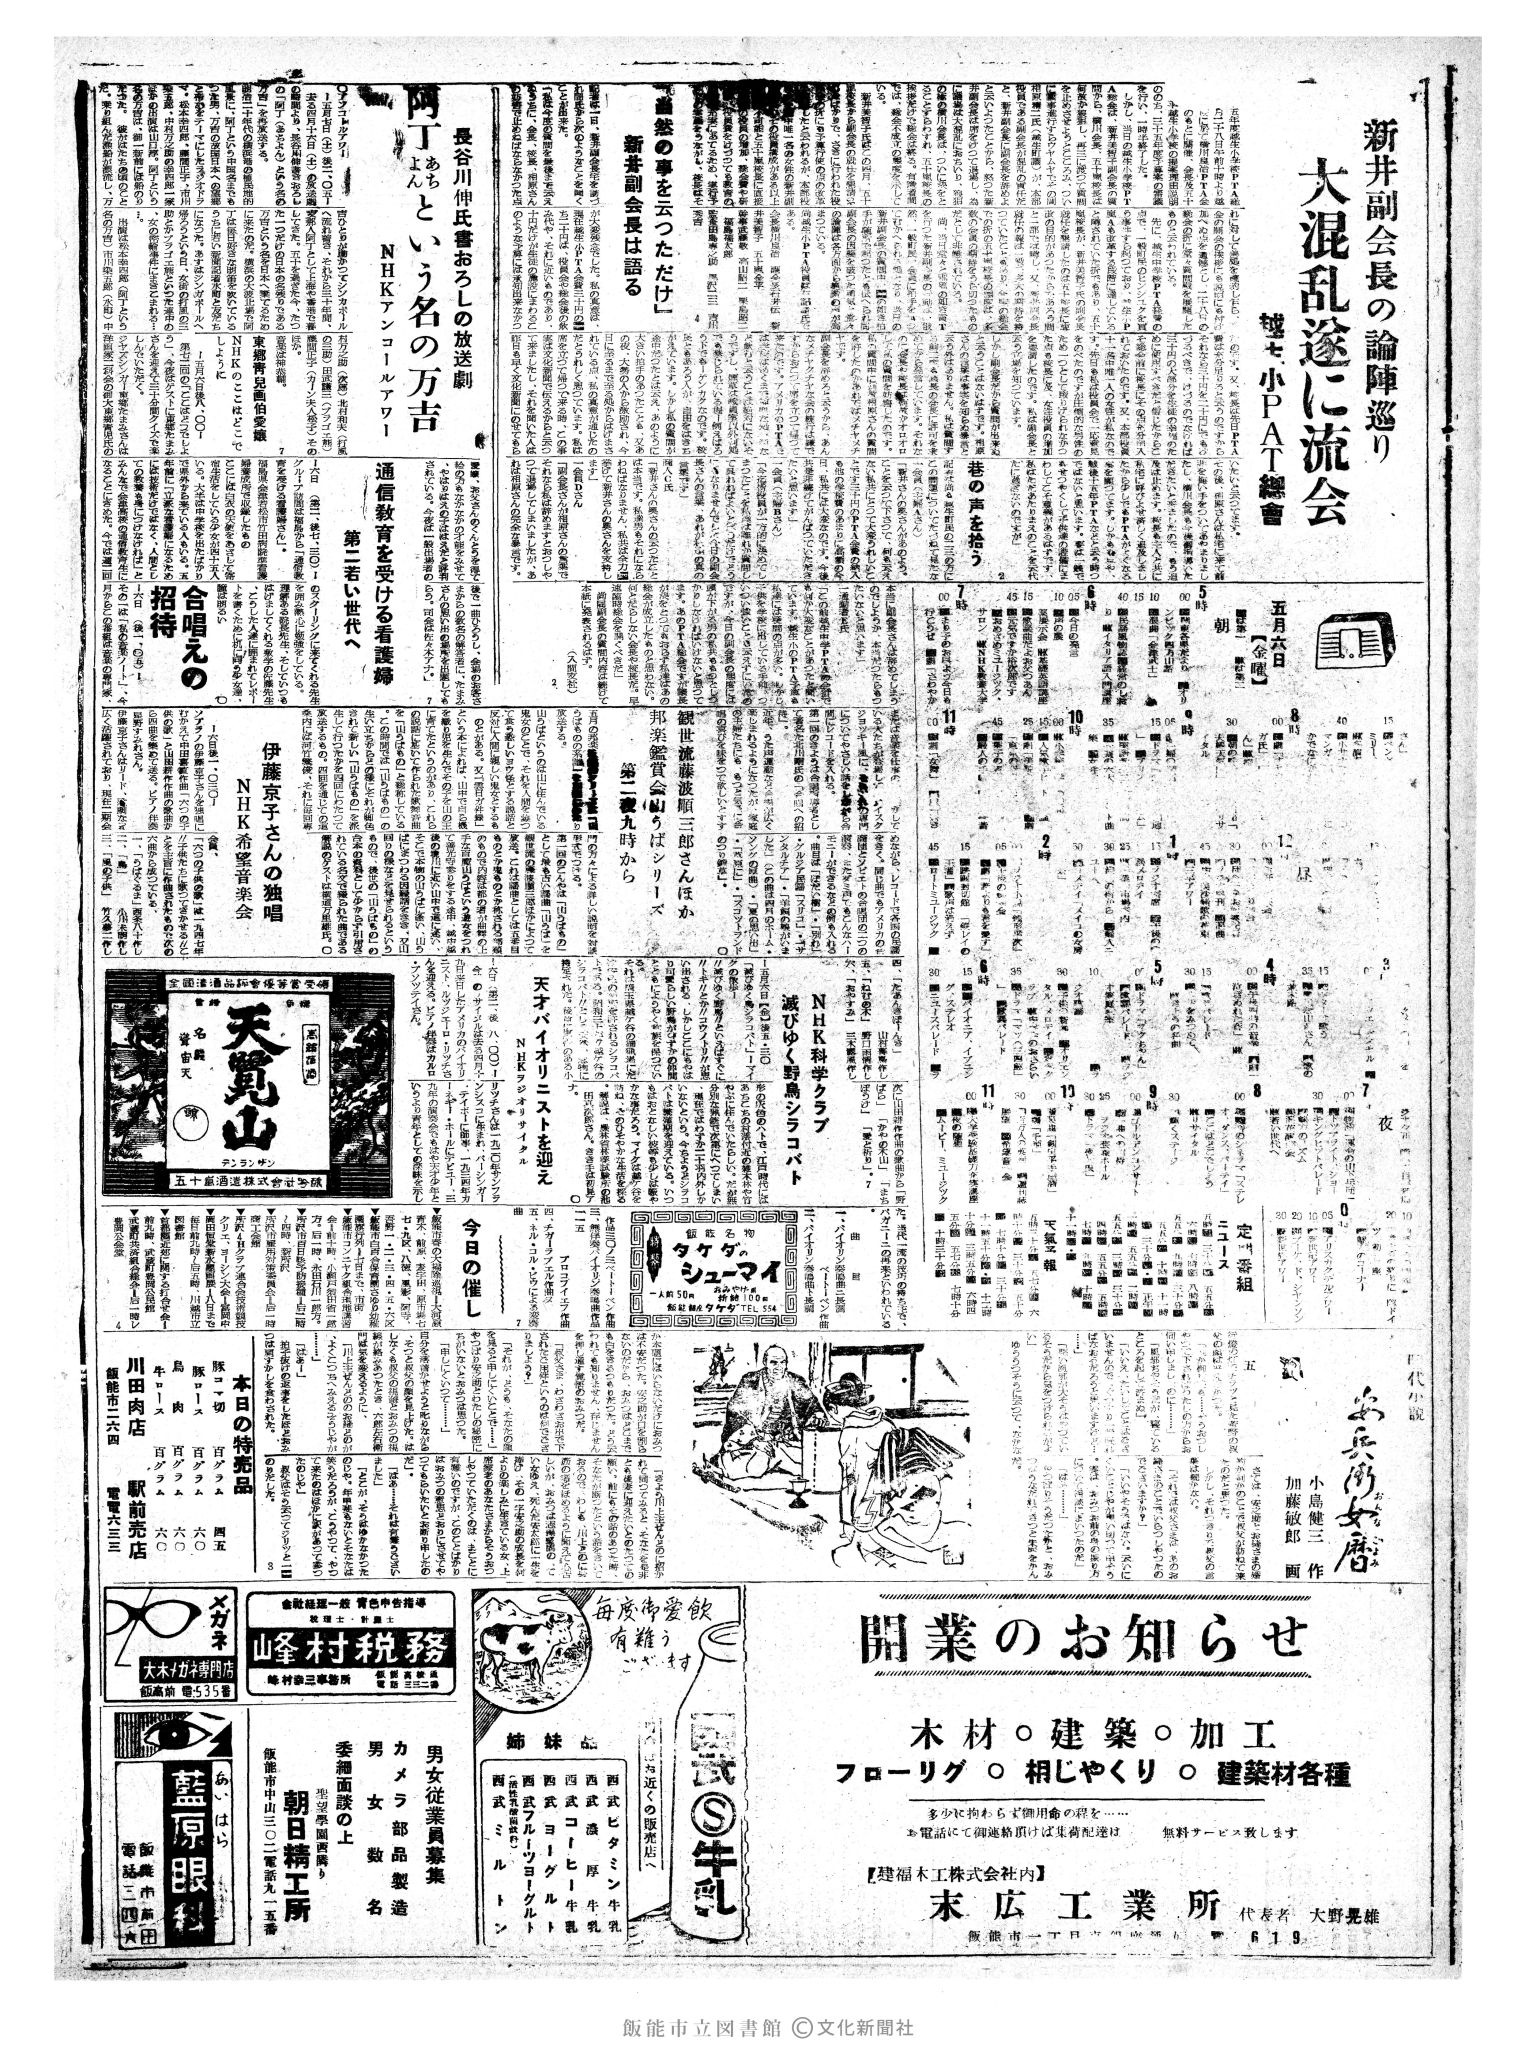 昭和35年5月6日2面 (第3523号) 3ページと同じ内容が印刷されています